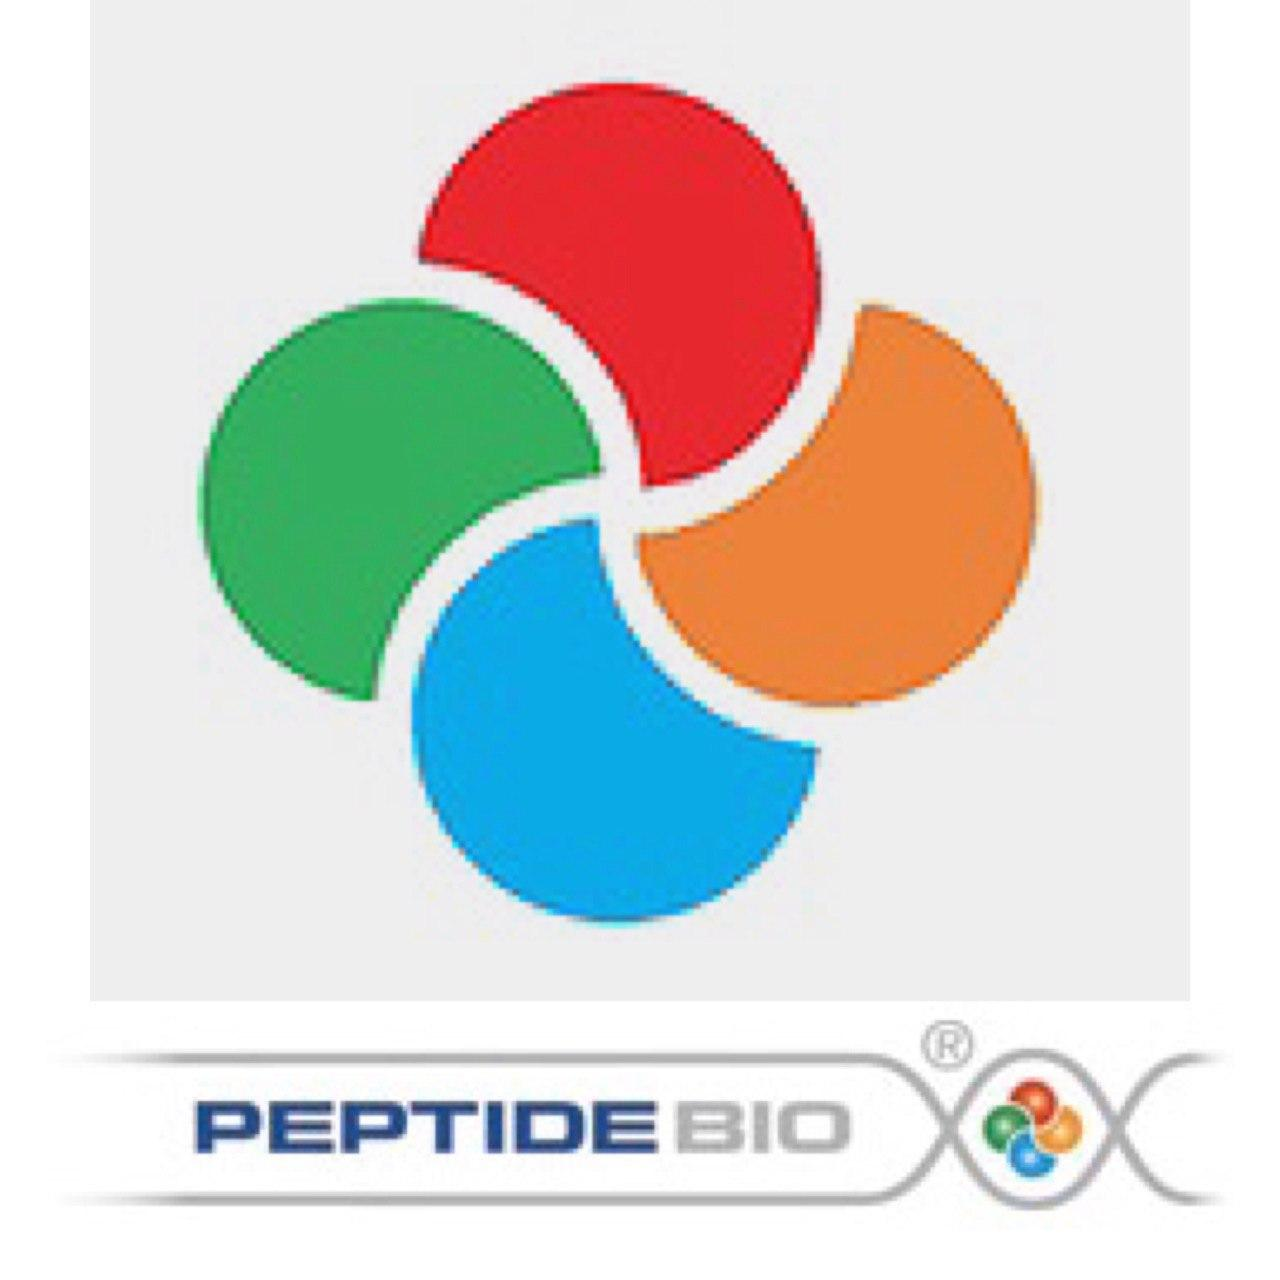 Цитогены PEPTIDE BIO - новое поколение пептидных биорегуляторов, предупреждающие процесс старения. За счет своей небольшой величины, они способны проникать в клетку и регулировать в ней определенные процессы